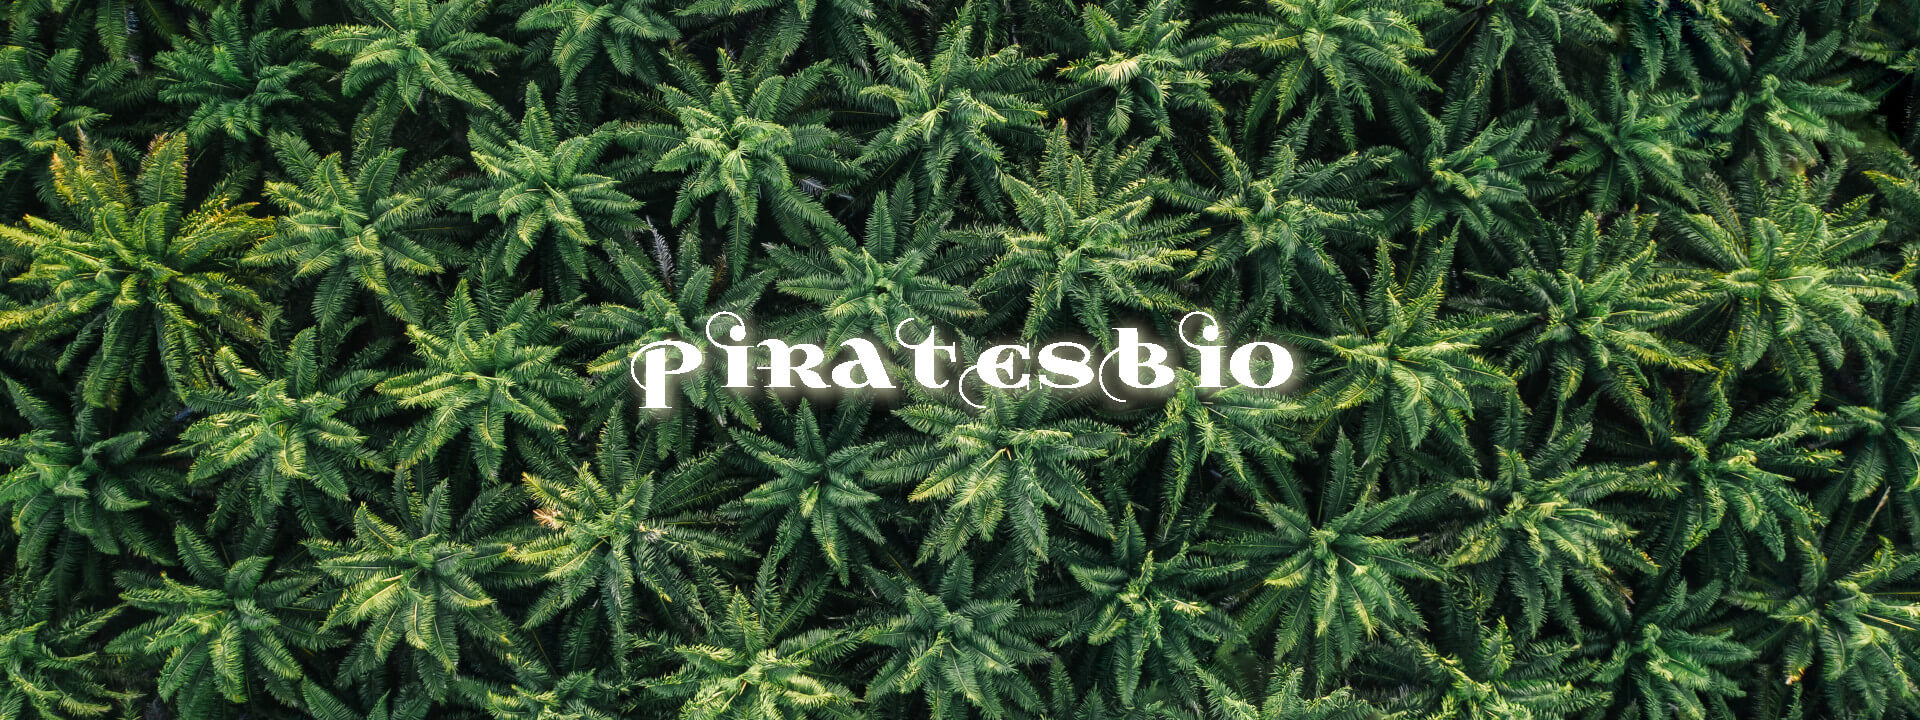 Piratesbio-champs-cannabis-cbd-banniere